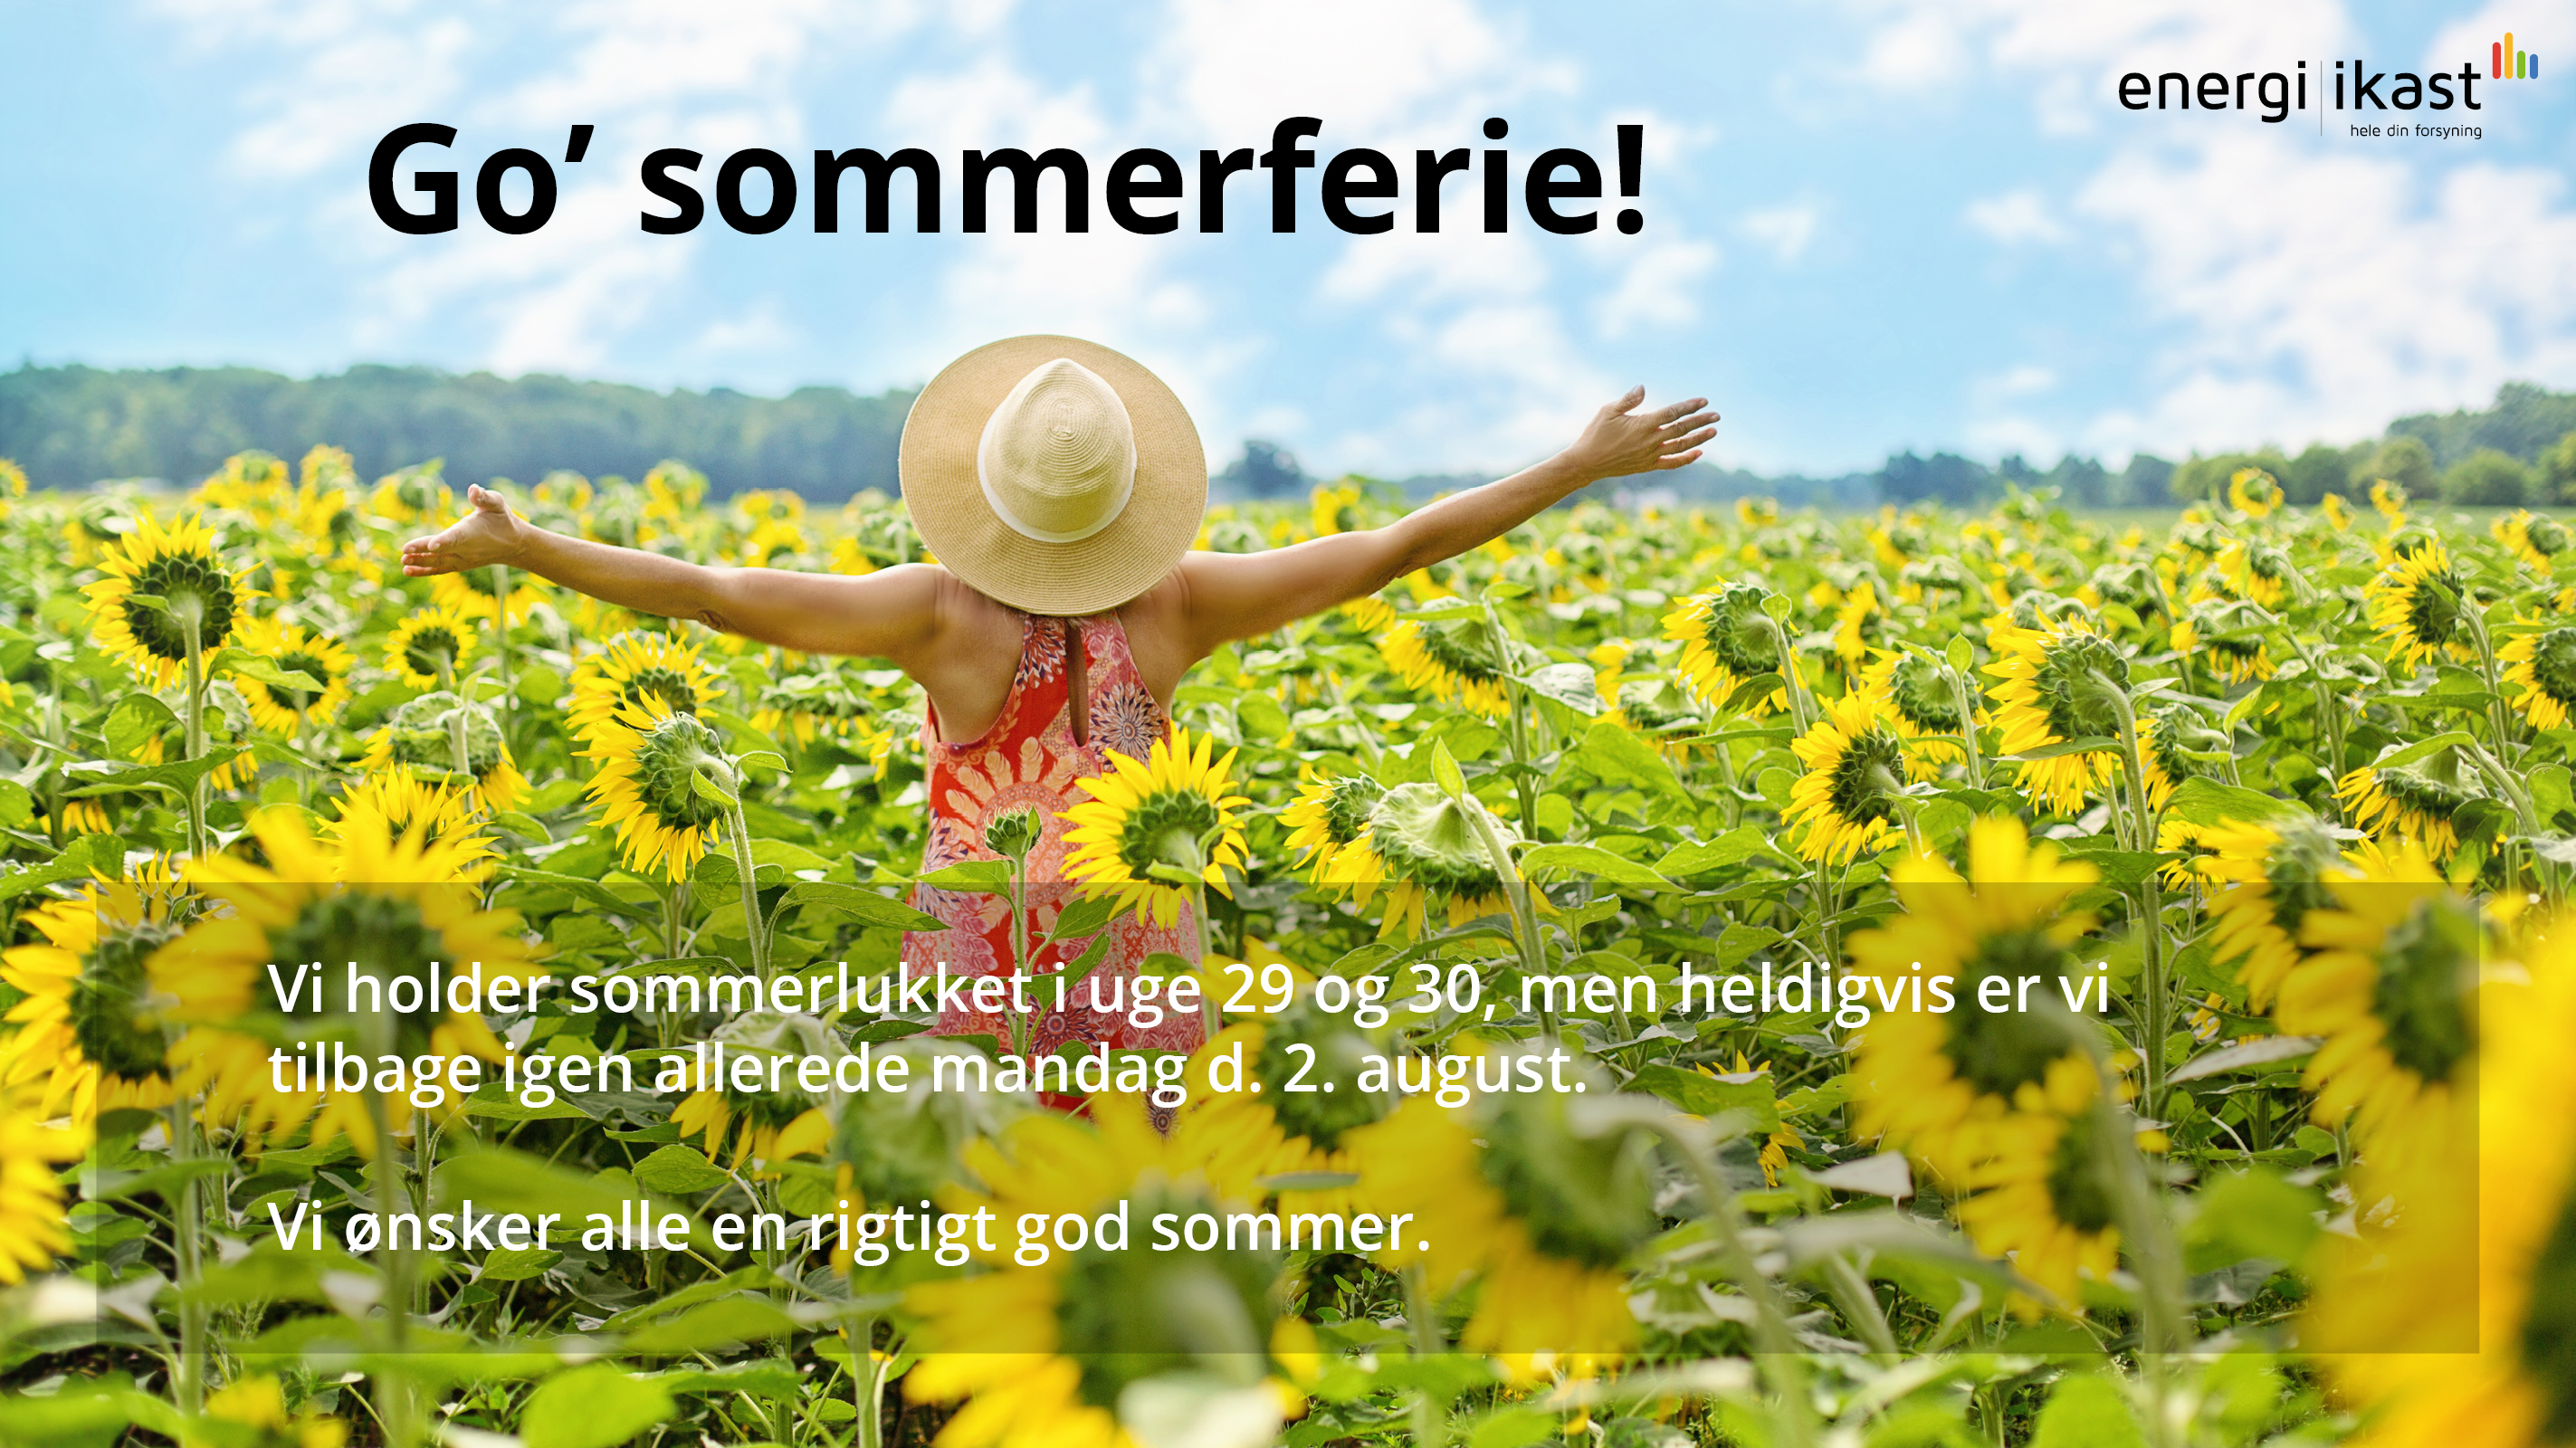 Sommerhilsen om ferielukket i uge 29 og 30 med billede af kvinde i solsikkemark